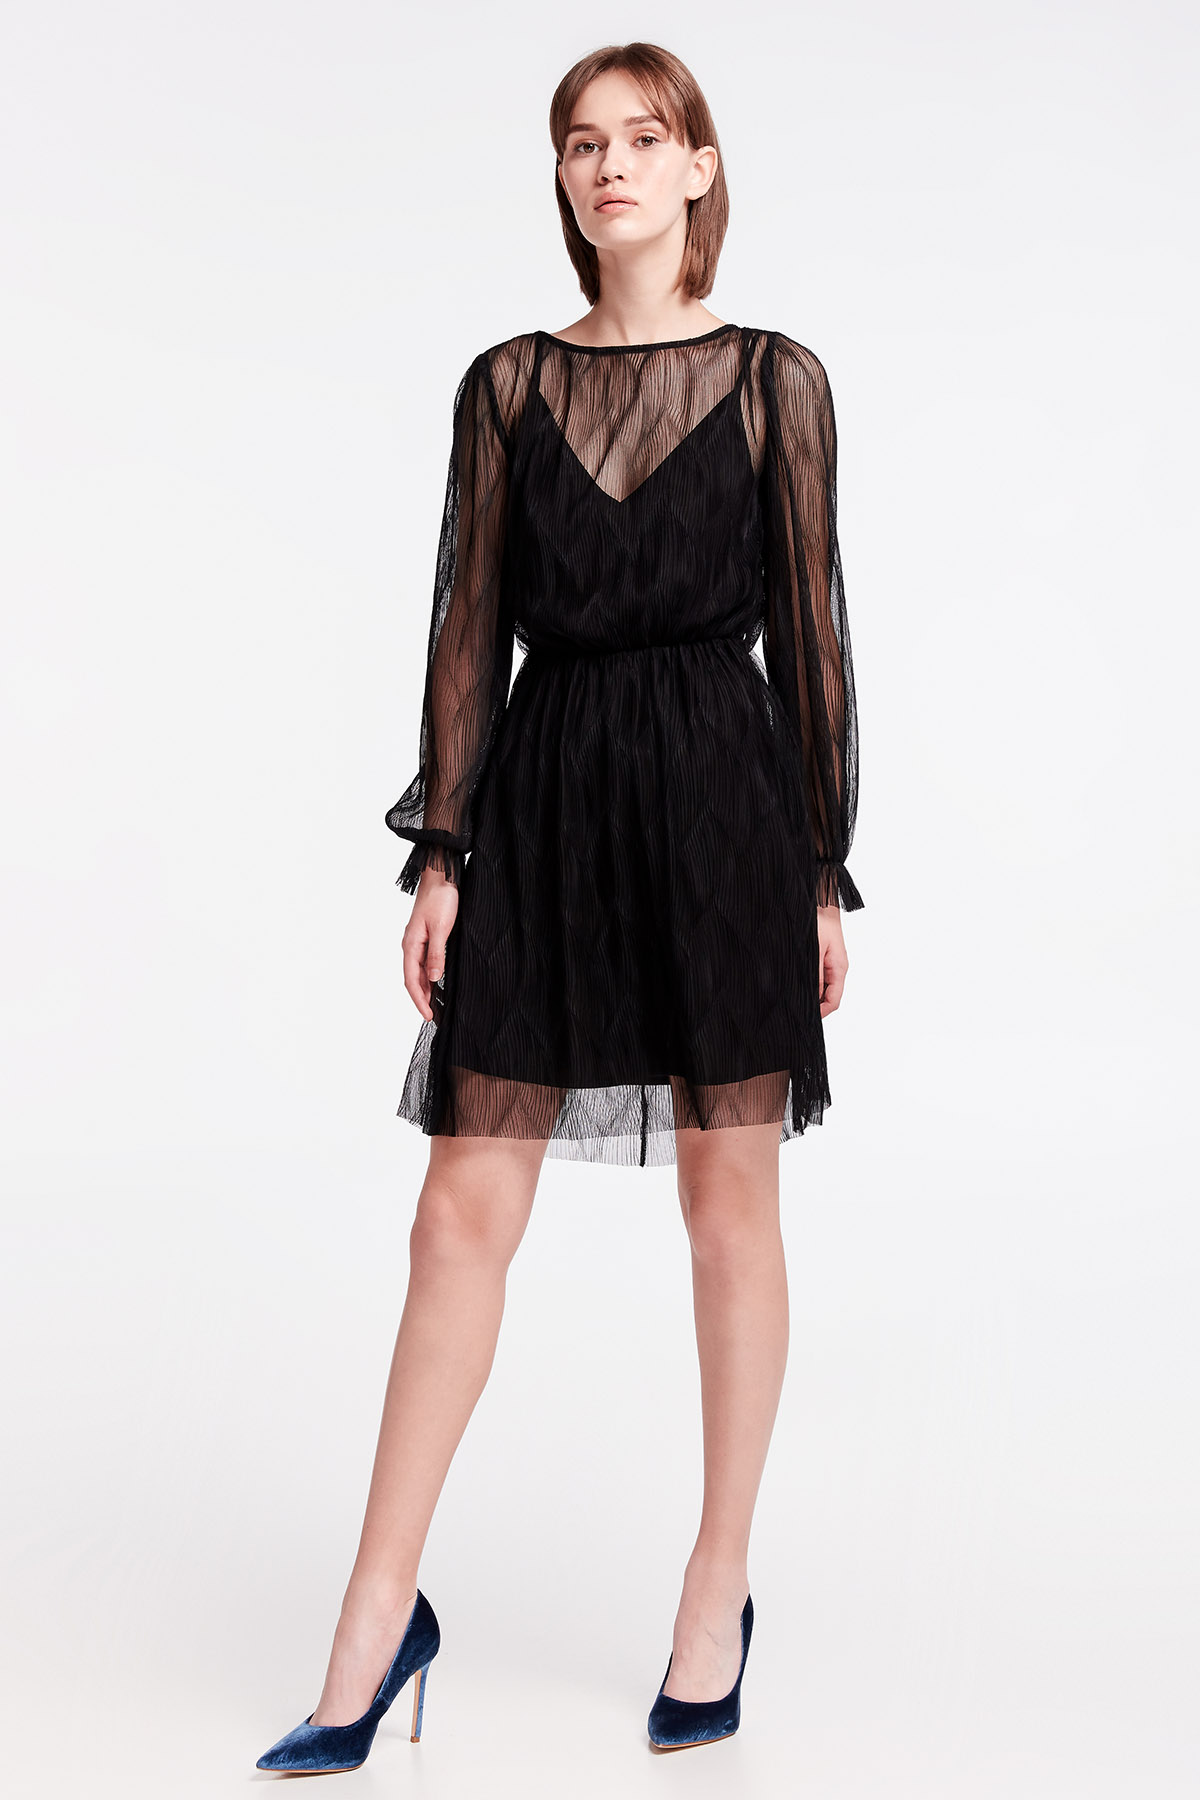 Black lace mini dress, photo 4